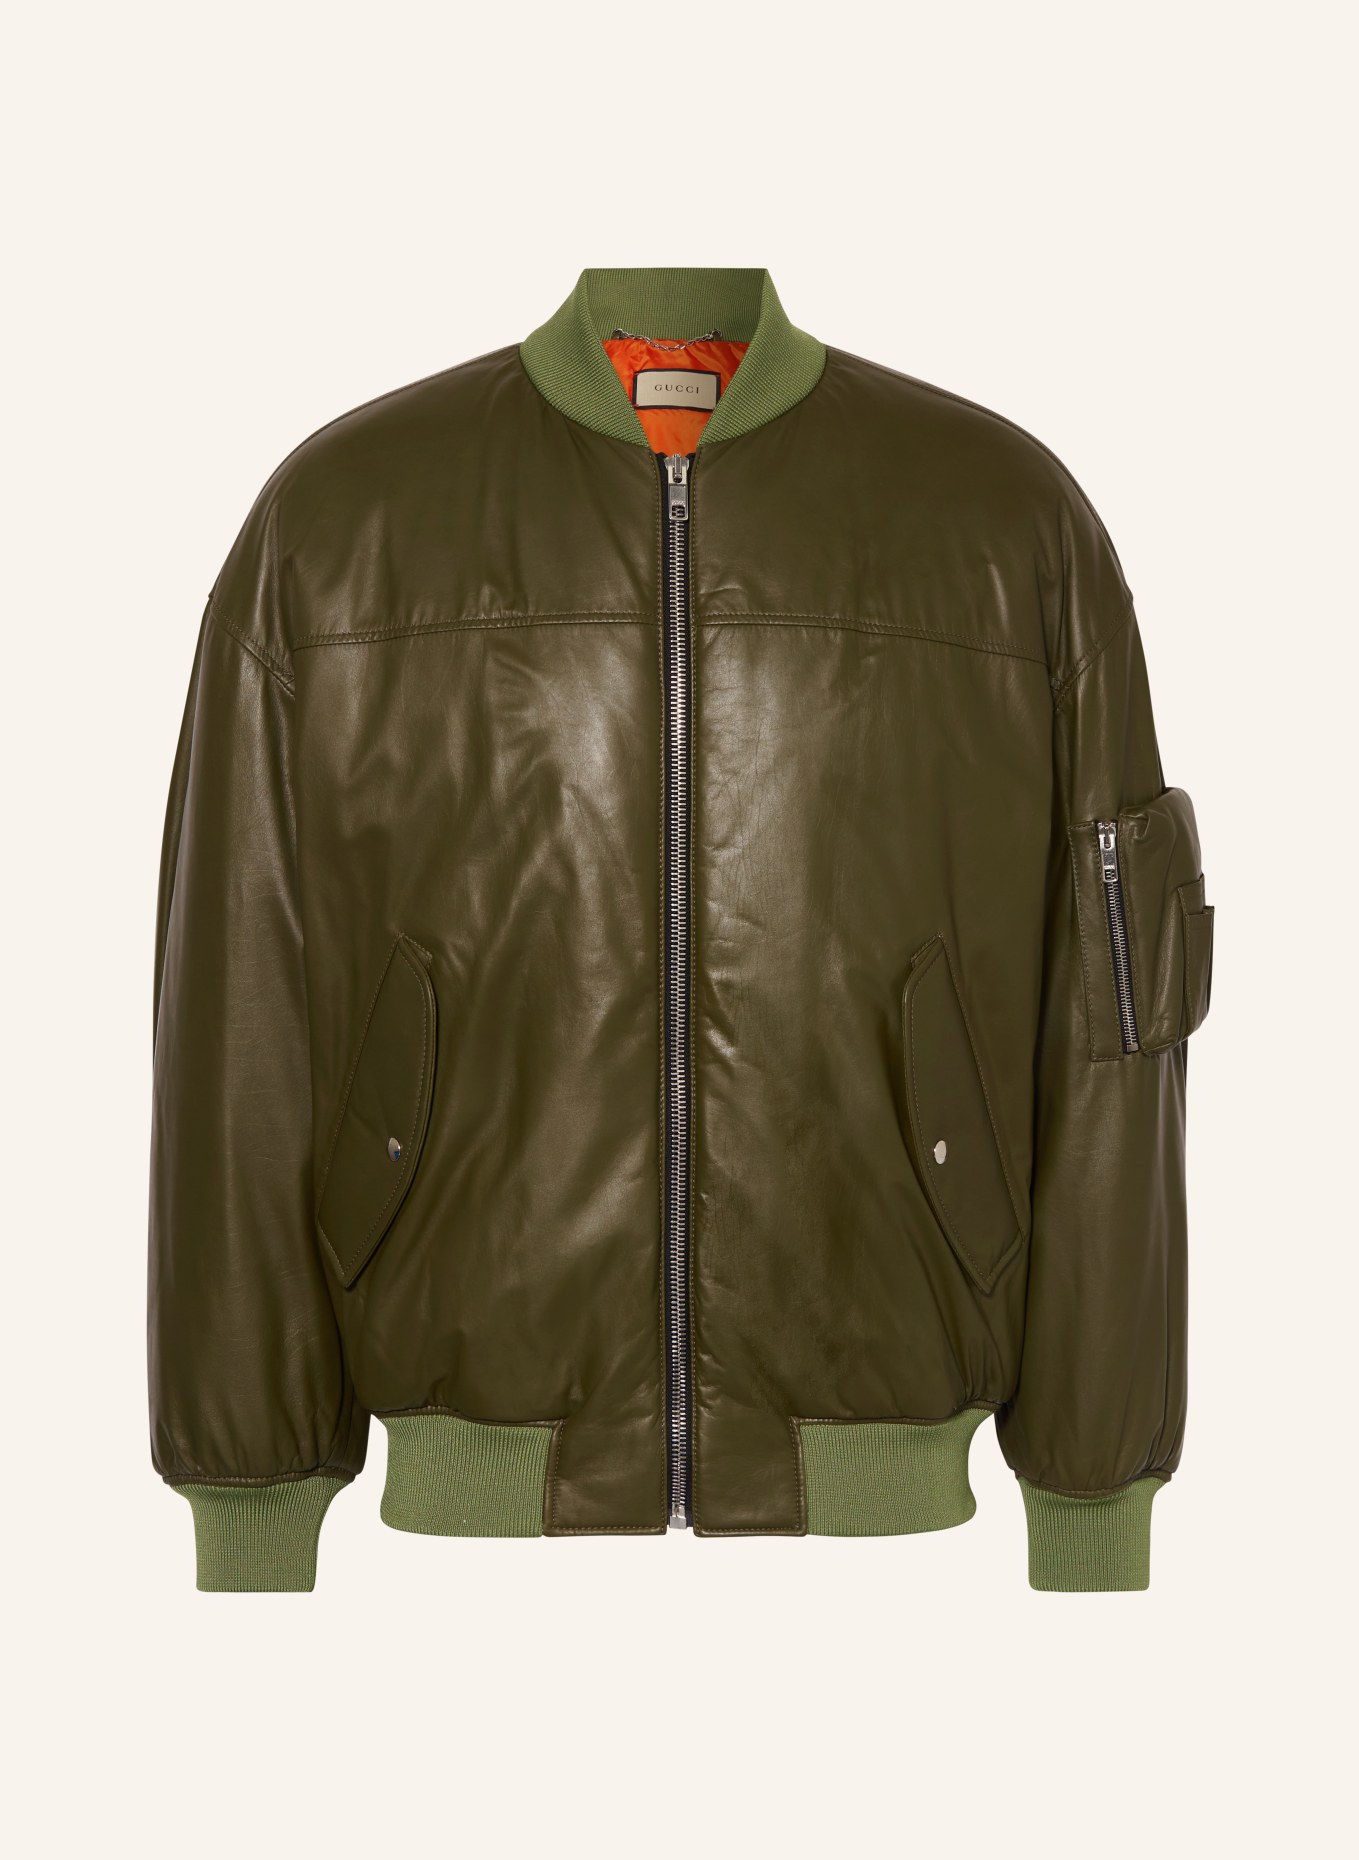 GUCCI Leather bomber jacket, Color: KHAKI (Image 1)